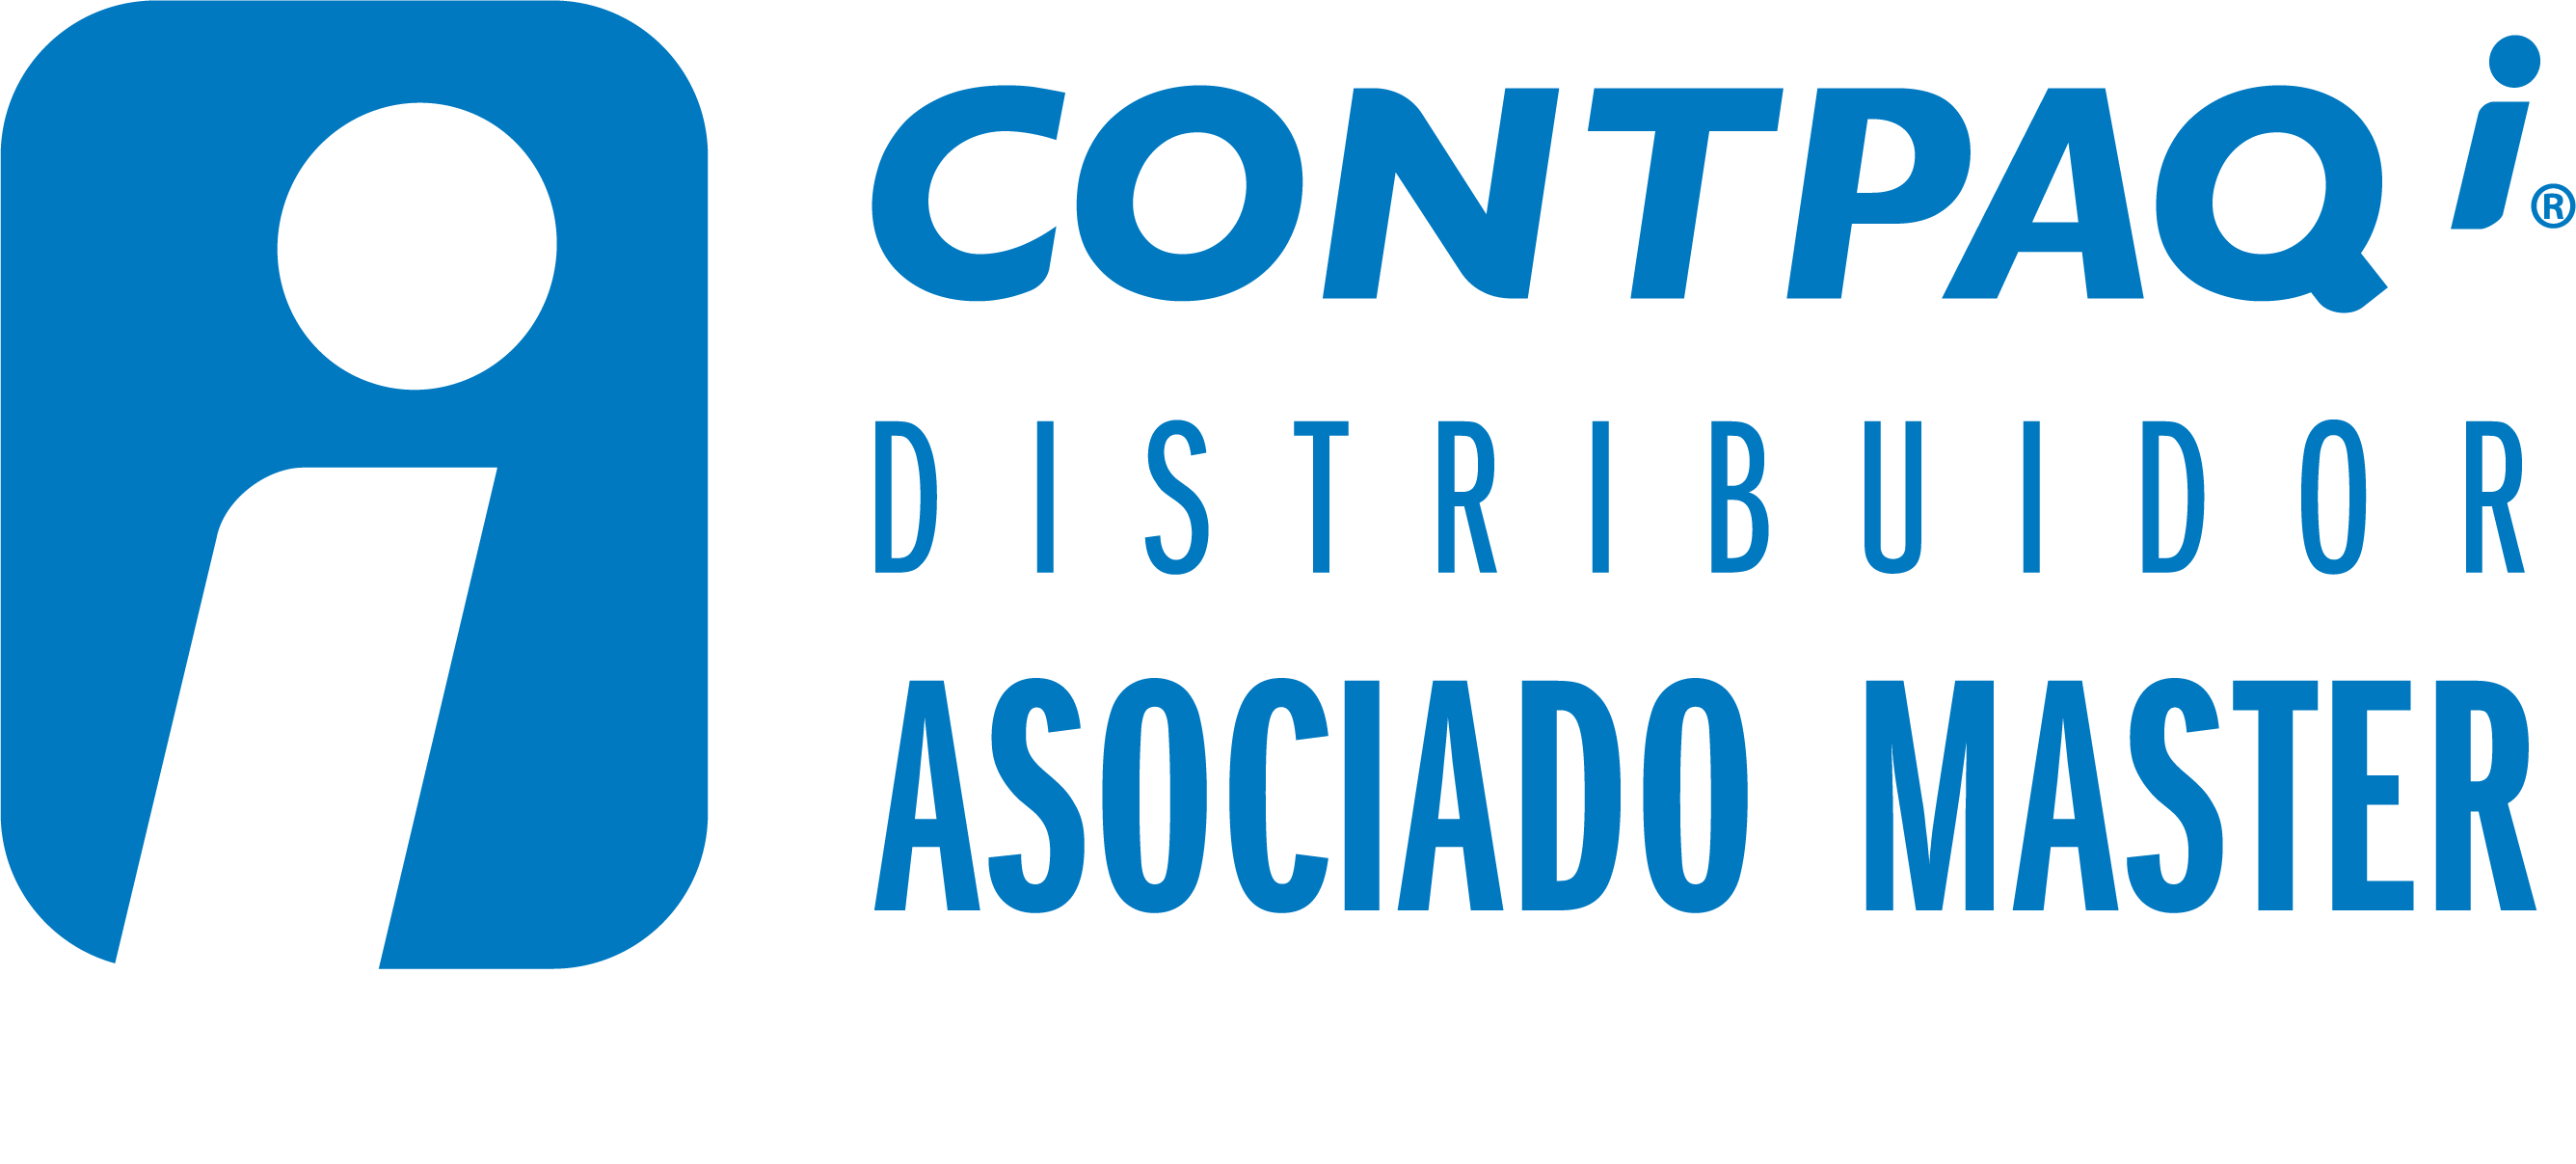 Aicts Contpaq i Distribuidor Asociado Master